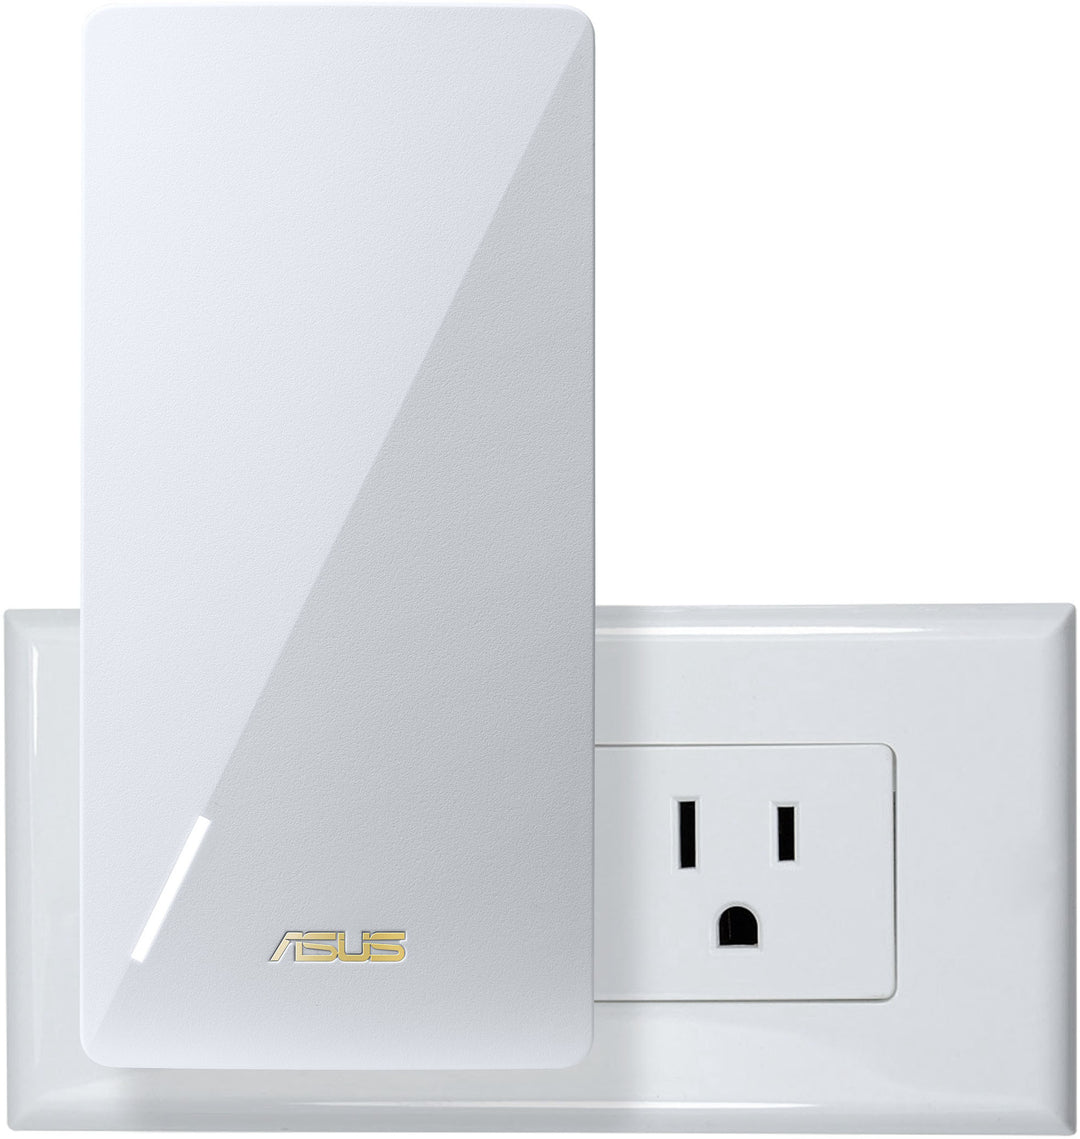 ASUS - AX3000 WiFi 6(802.11ax) AiMesh Router_3